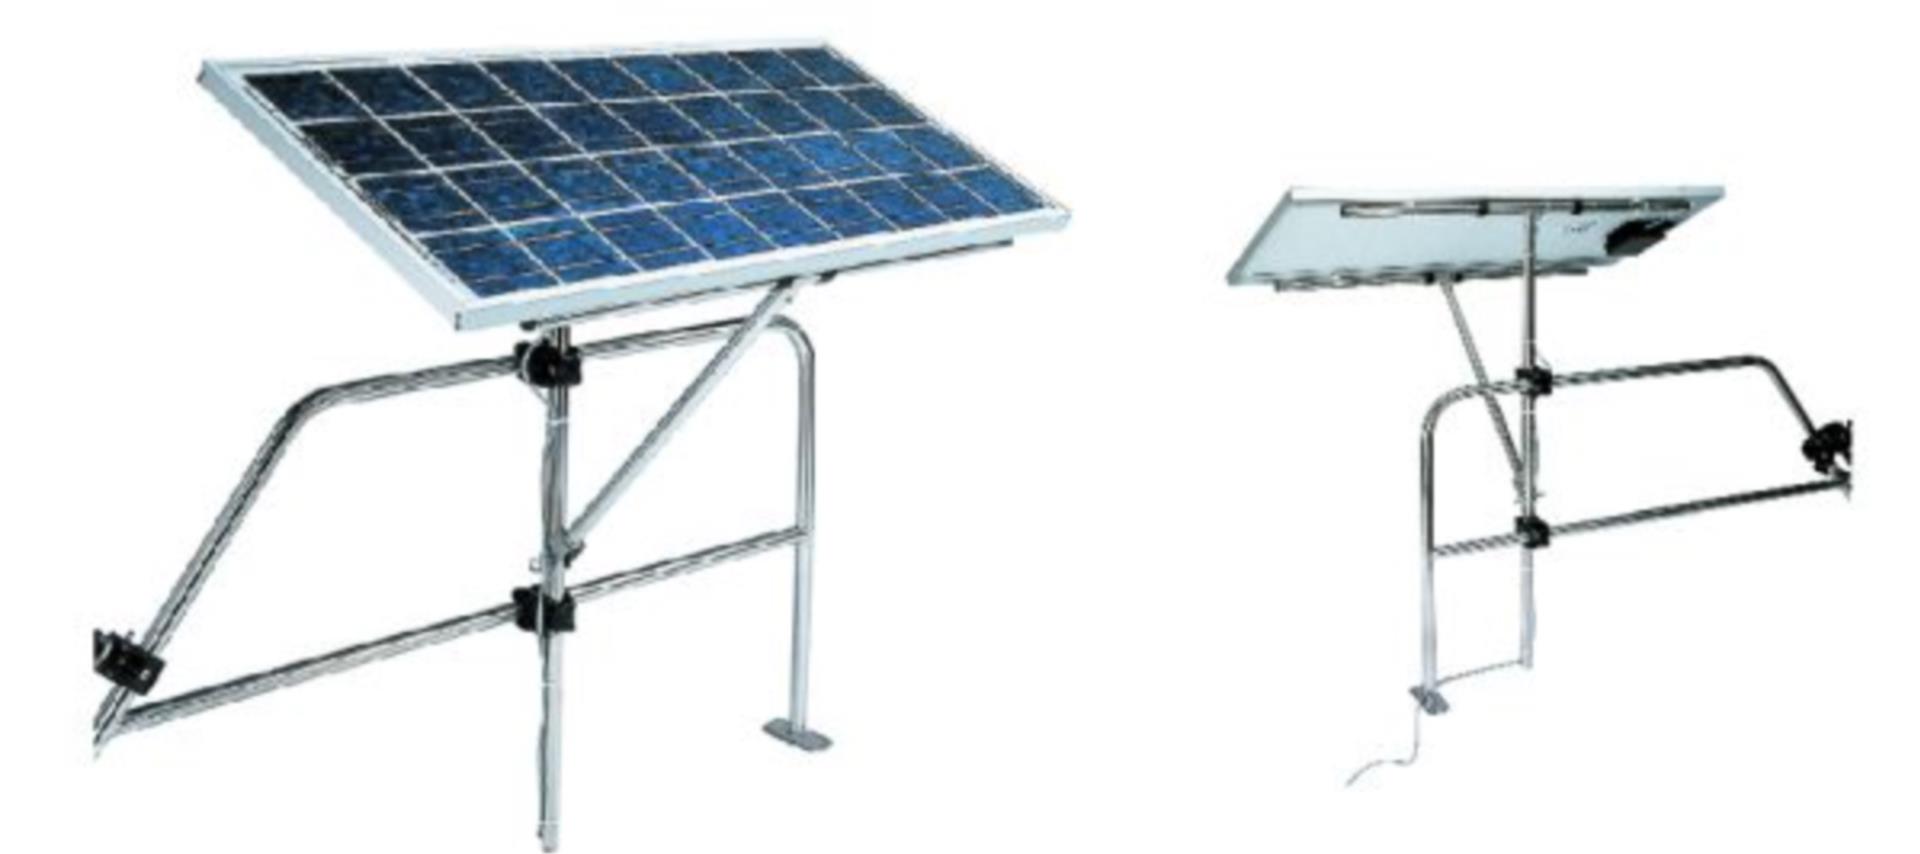 Relingshalterung für Solarplatten, einstellbar